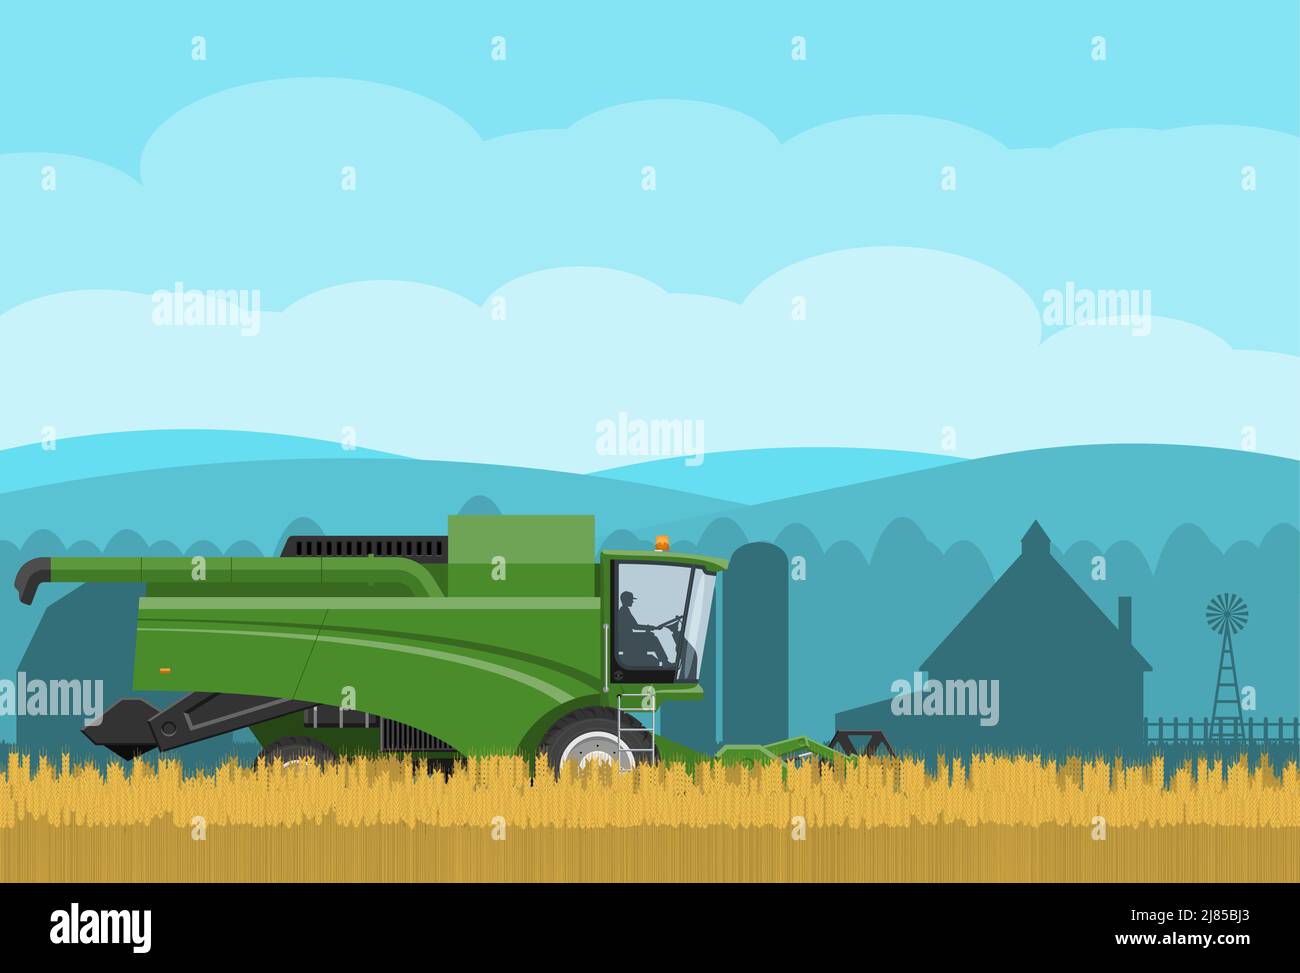 La moissonneuse-batteuse travaille sur la récolte du blé. Image vectorielle d'un paysage avec machines agricoles et village Illustration de Vecteur